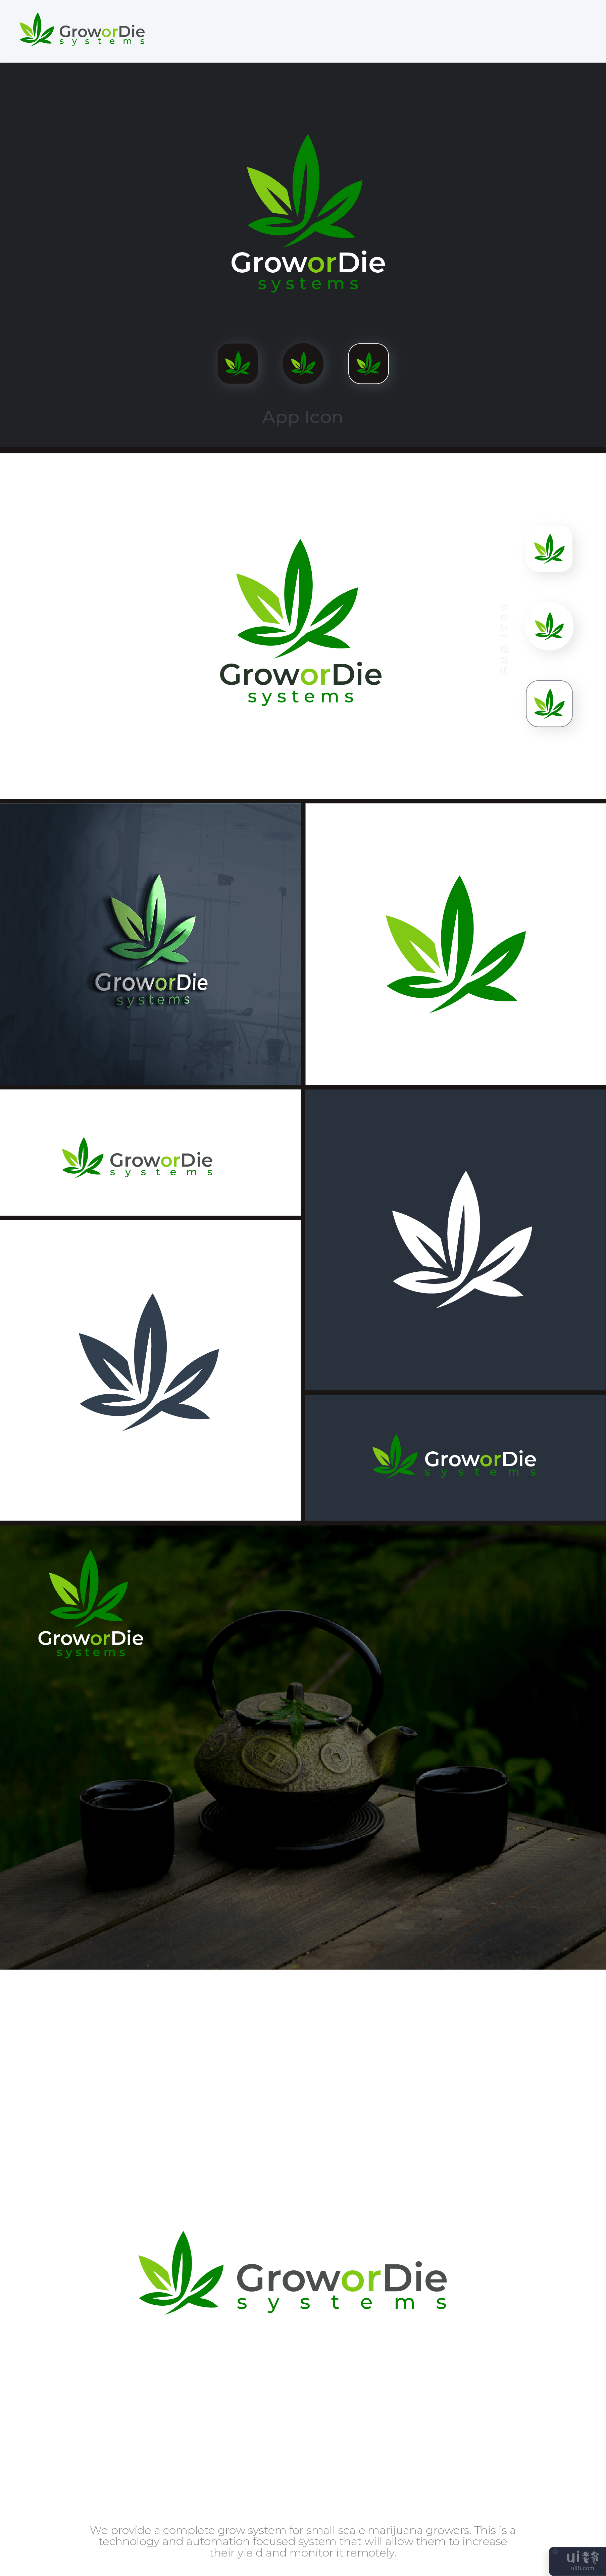 大麻标志设计(Cannabis Logo Design)插图2